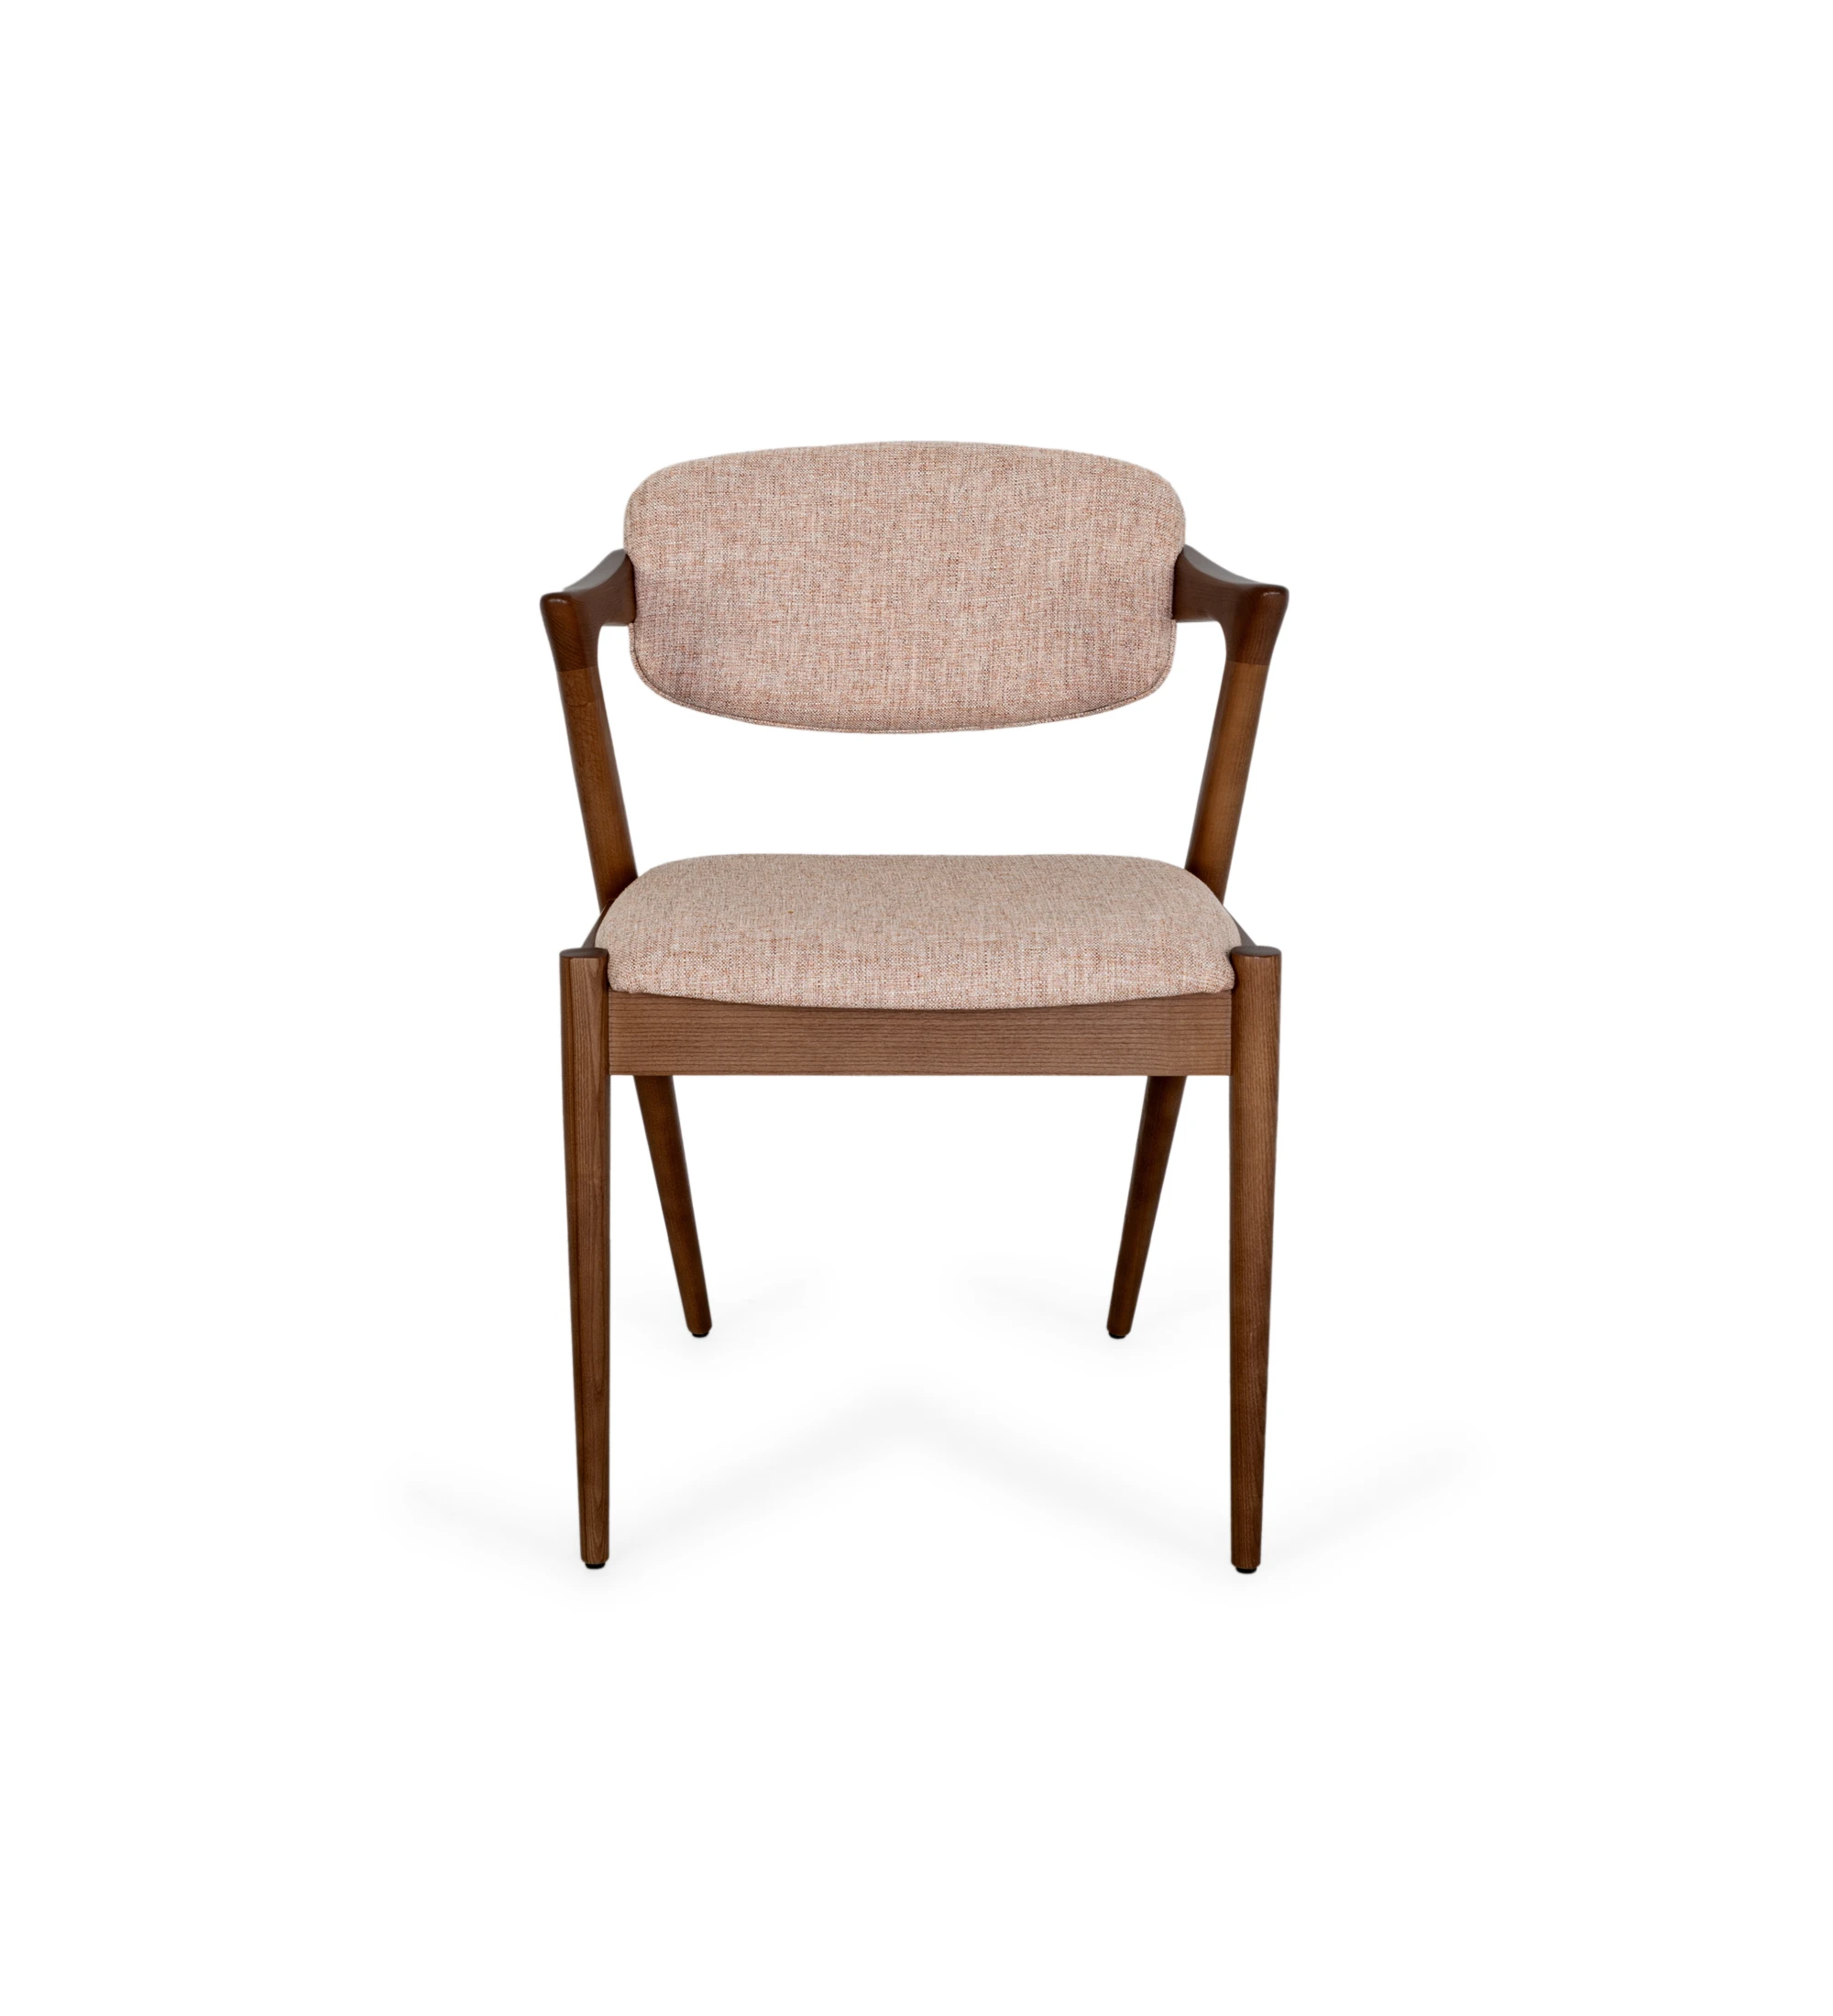 Silla en madera de fresno color nogal, con asiento y respaldo tapizado en tejido.